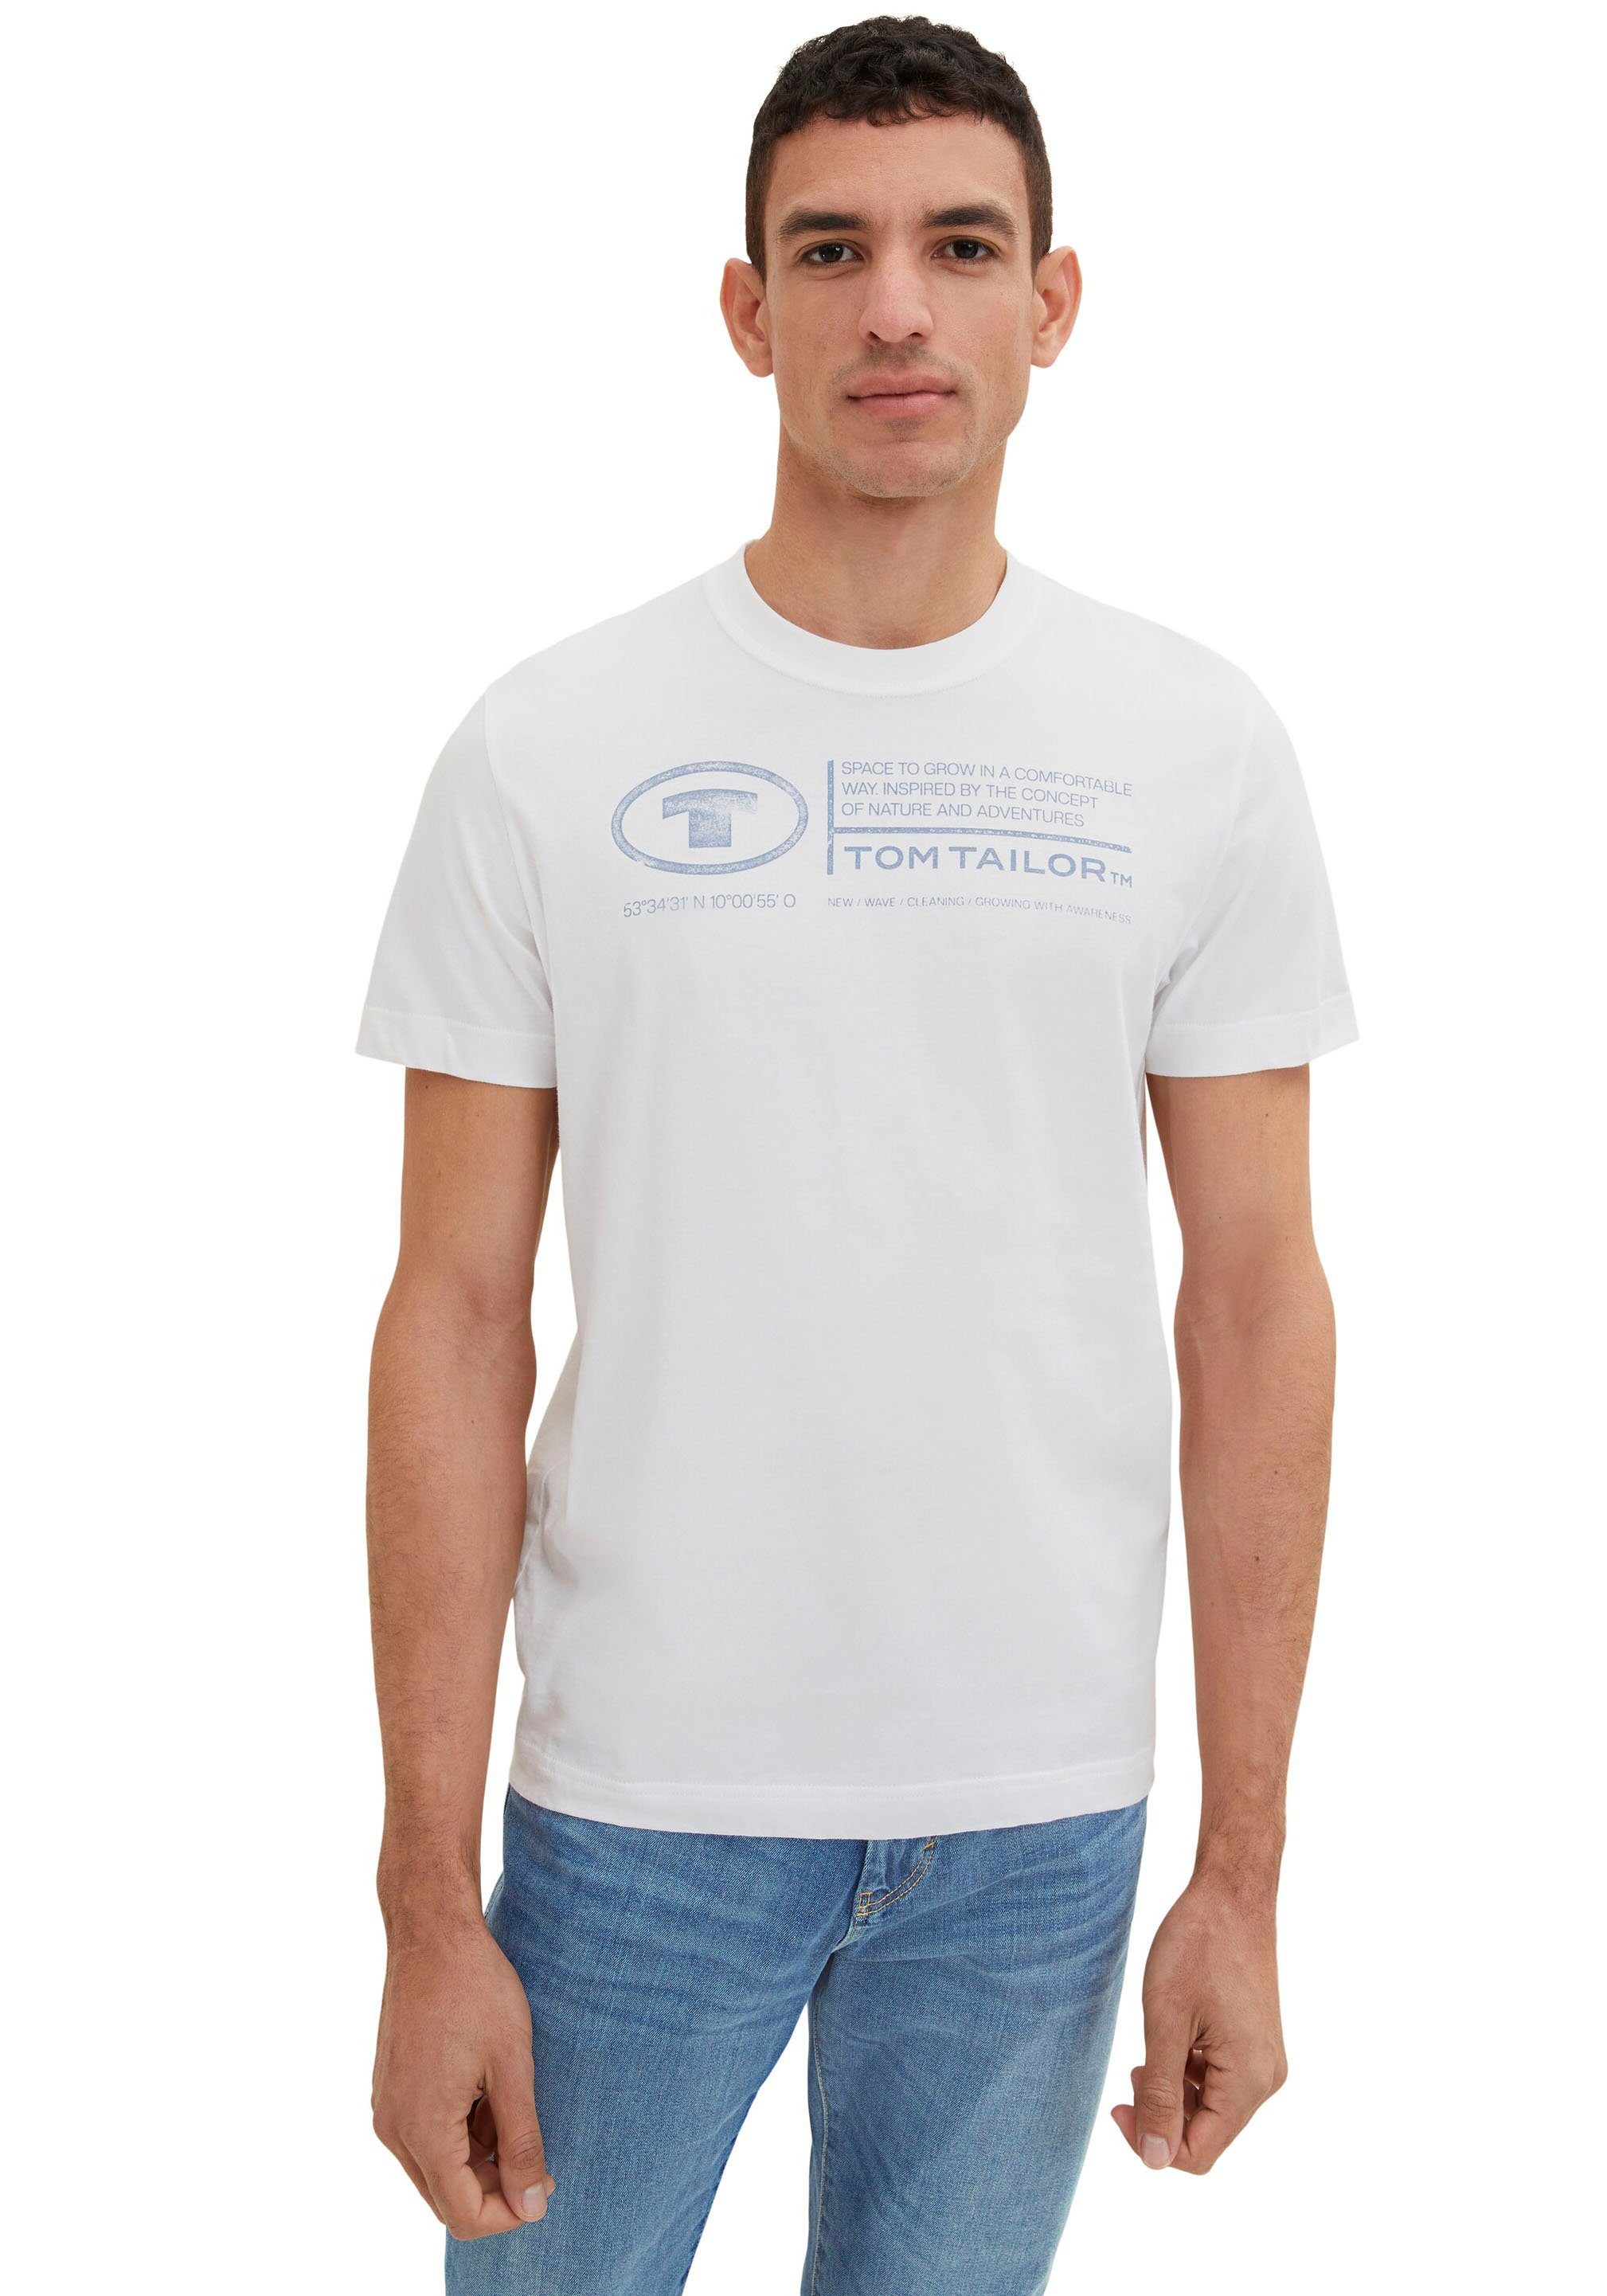 Tom TAILOR Tailor Print-Shirt TOM T-Shirt Herren Frontprint weiß